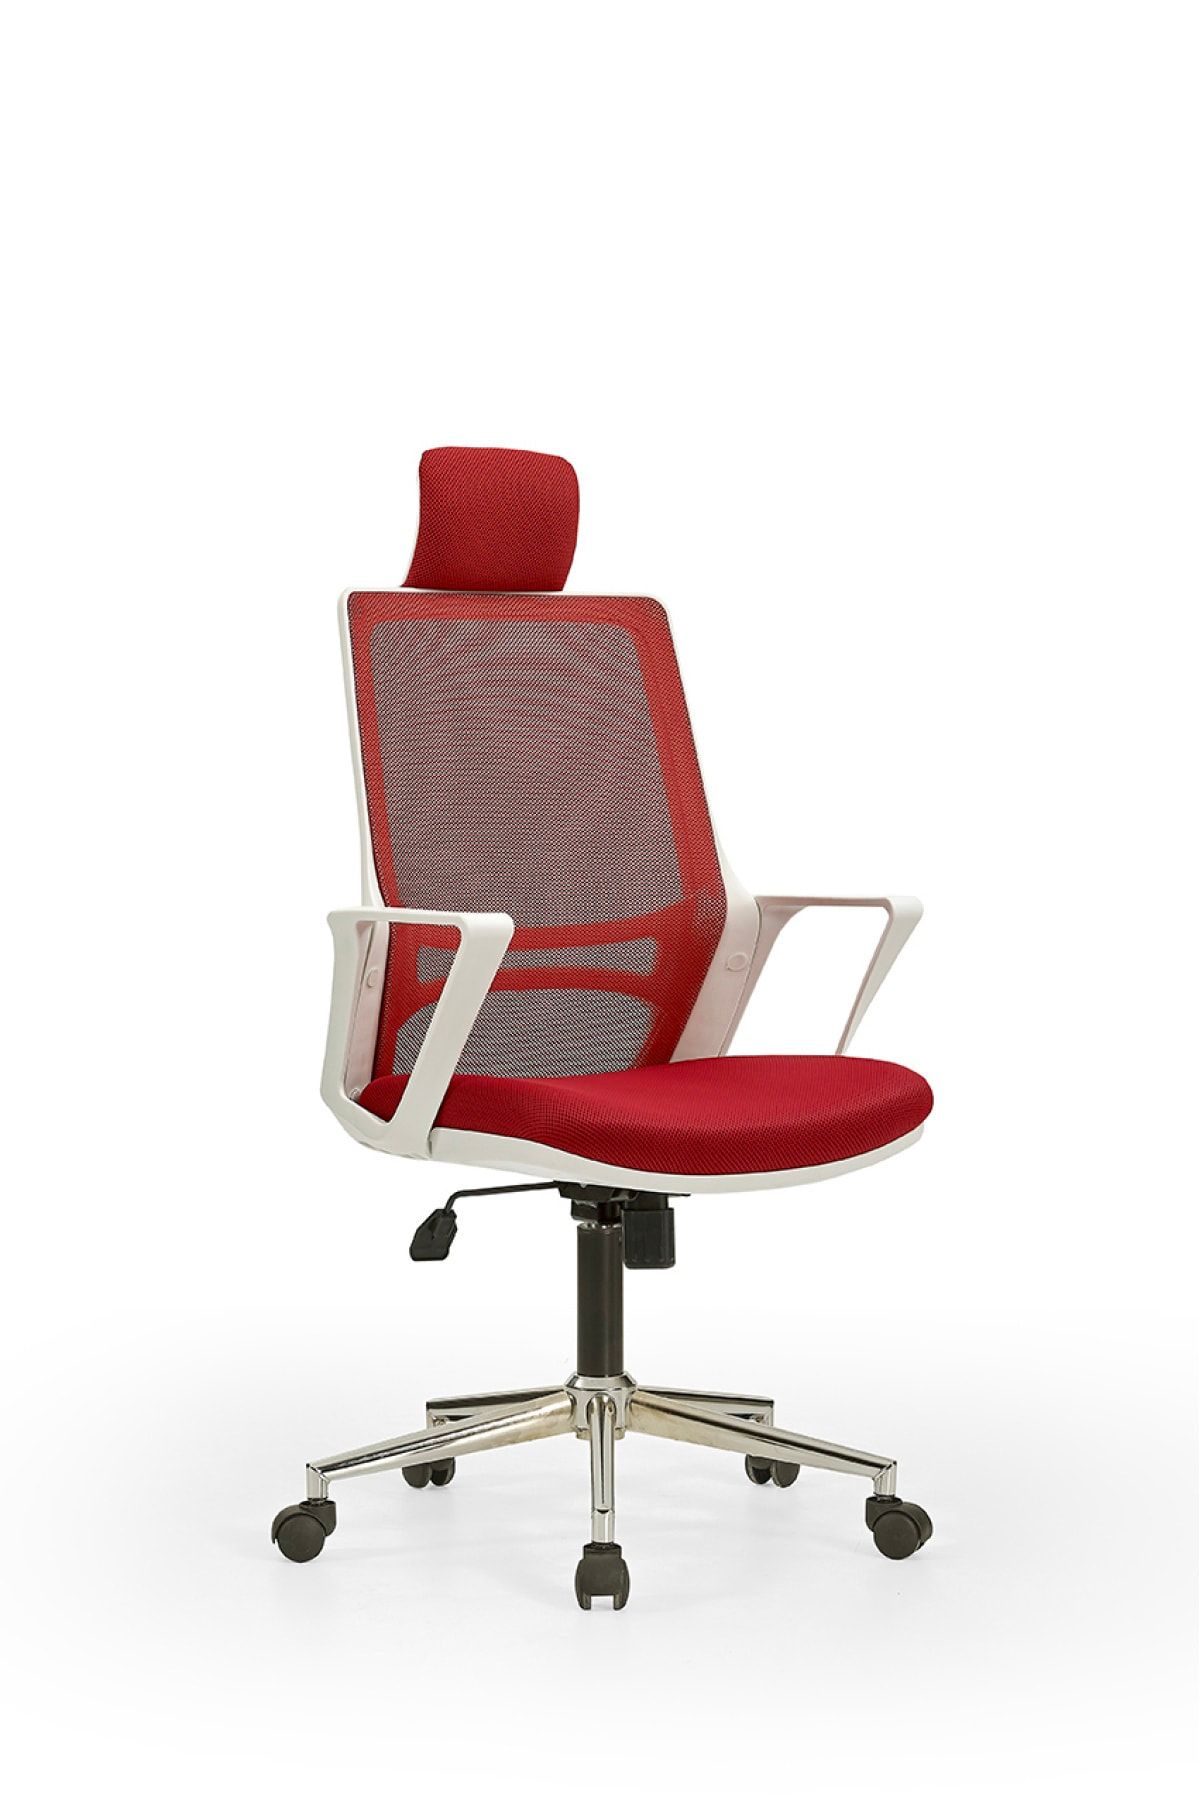 MEHMET YAREN BURO Arya1 Bilgisayar Koltuğu - Ofis - Müdür - Büro - Çalışma Sandalyesi Kırmızı Beyaz Renk Krom Ayaklı